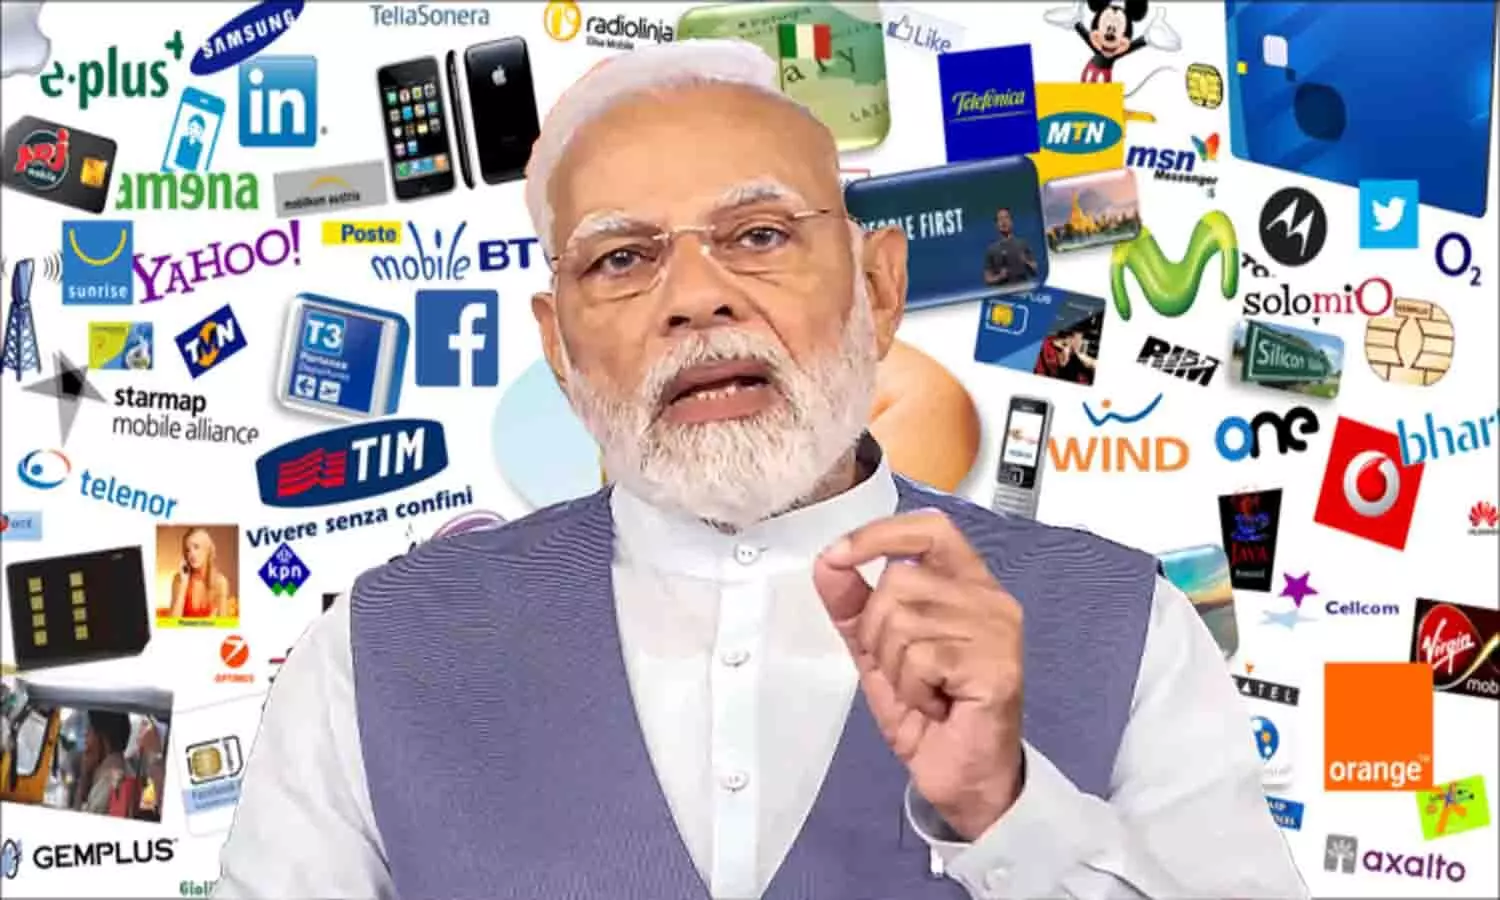 Modi Free Recharge Jio Number: मोदी सरकार हर यूजर को फ्री में दे रही है ₹239 का मोबाइल रिचार्ज, जानिए सच्चाई?